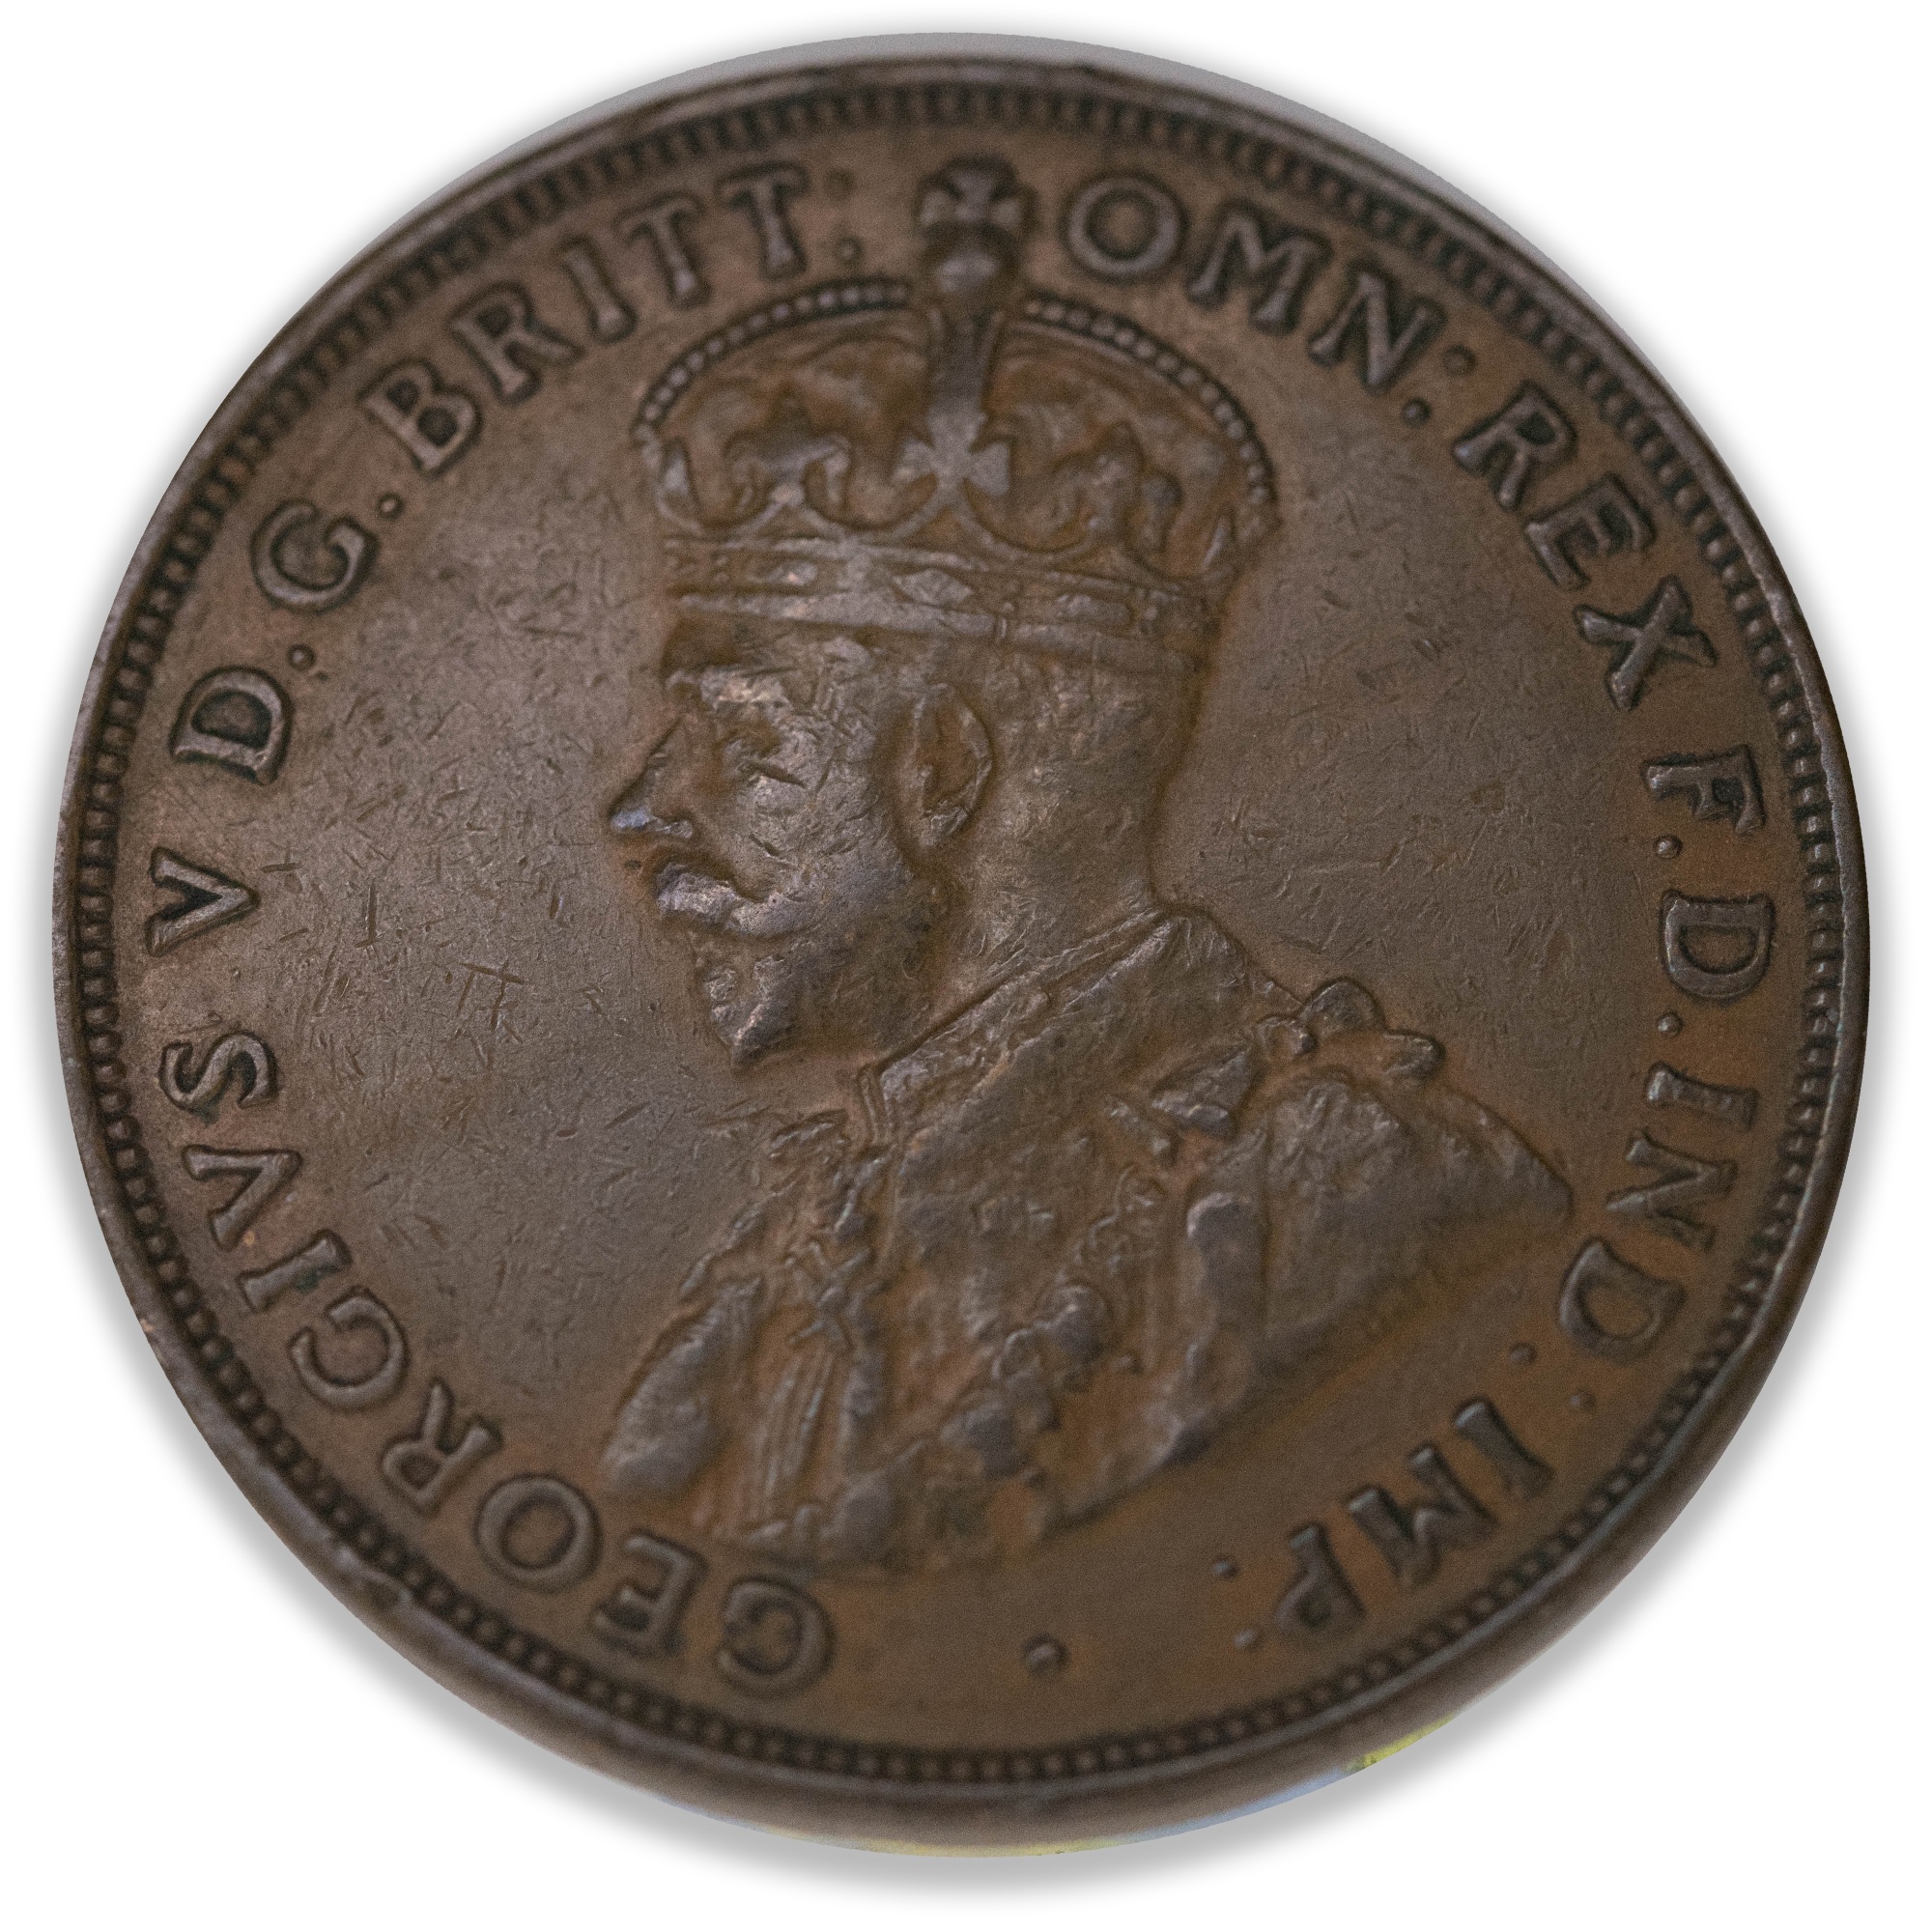 1930 Australian Penny Very Fine